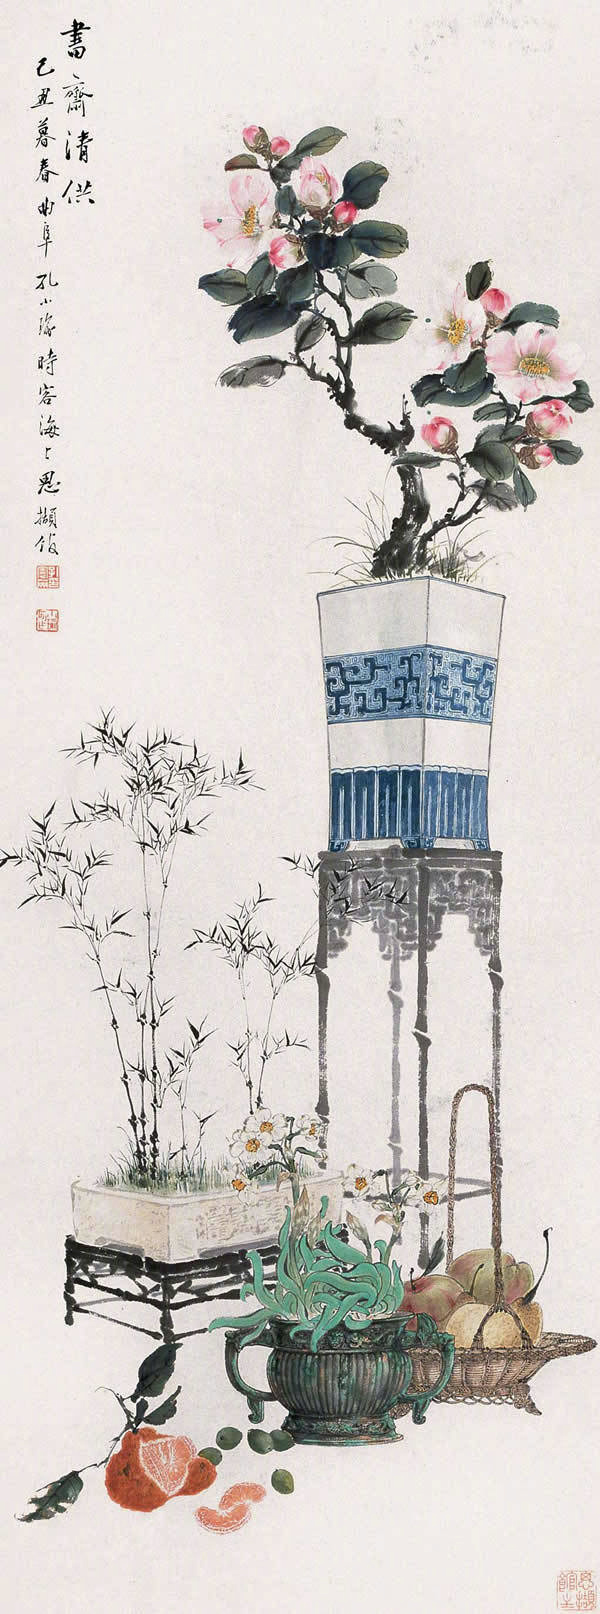 欣赏中国传统工笔博古画是一种美的享受